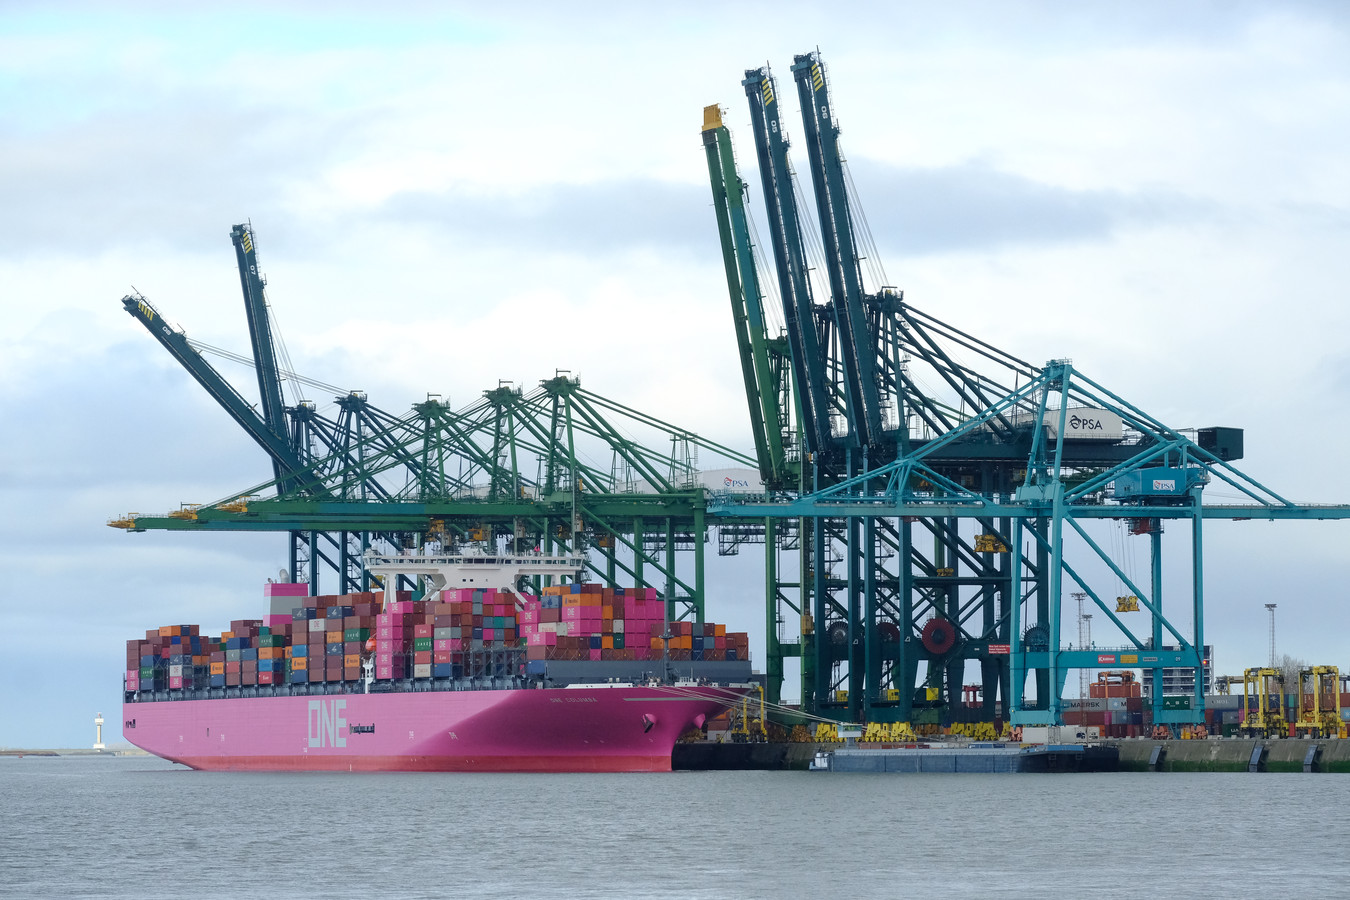 ader Bezienswaardigheden bekijken keuken Roze schip voor anker in Antwerpse haven | Foto | pzc.nl